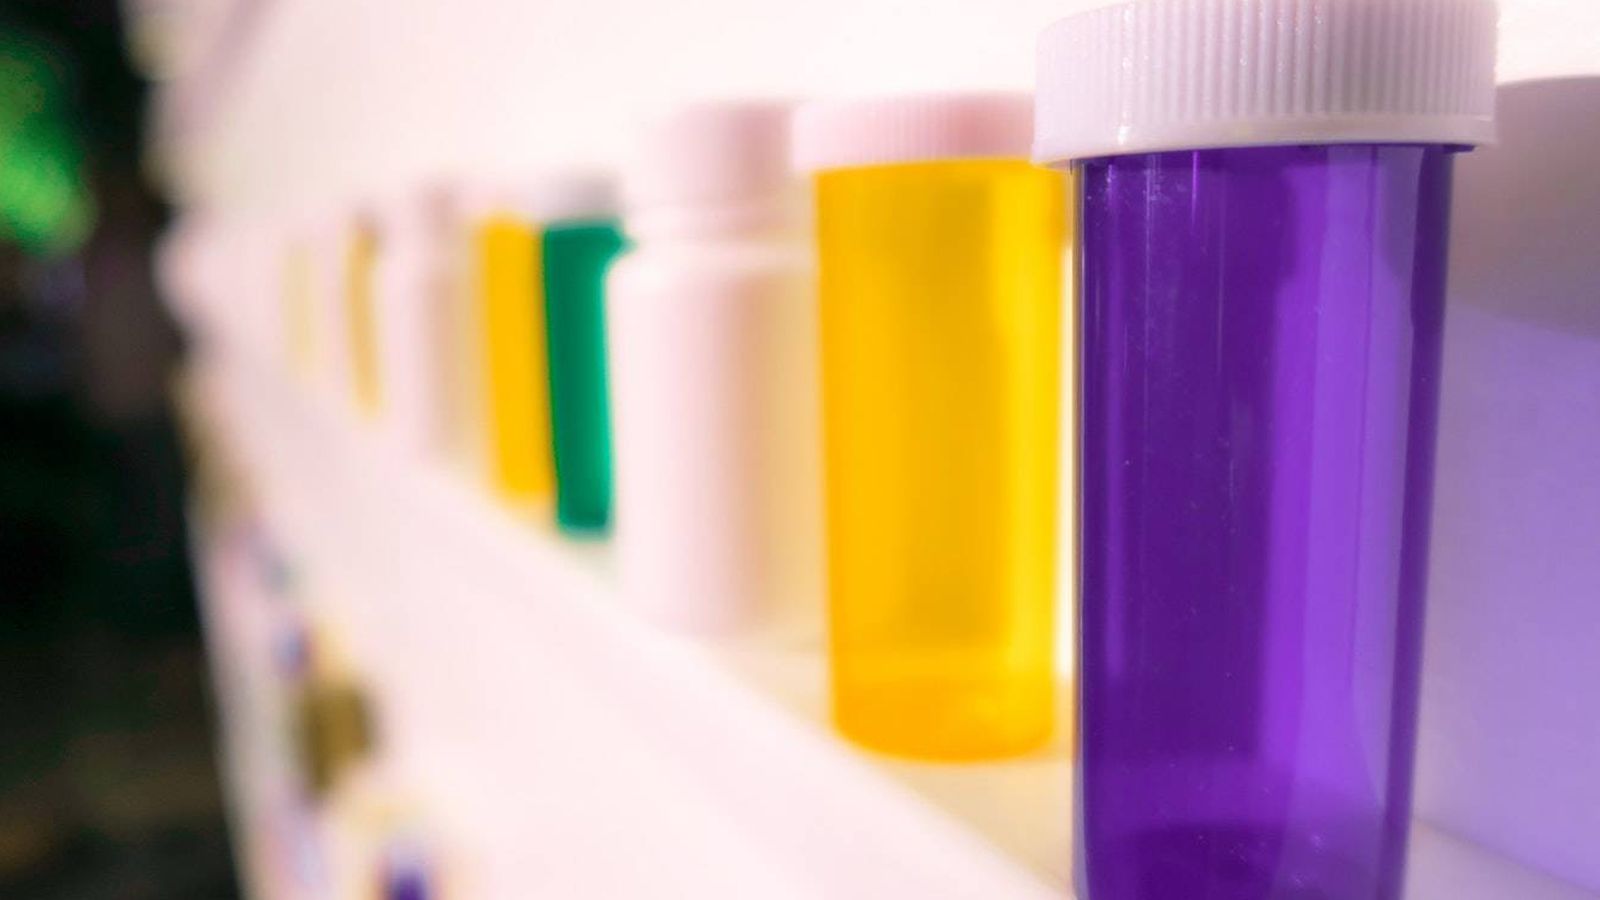 Foto: Sanidad retira 66 medicamentos homeopáticos. (Unsplash)